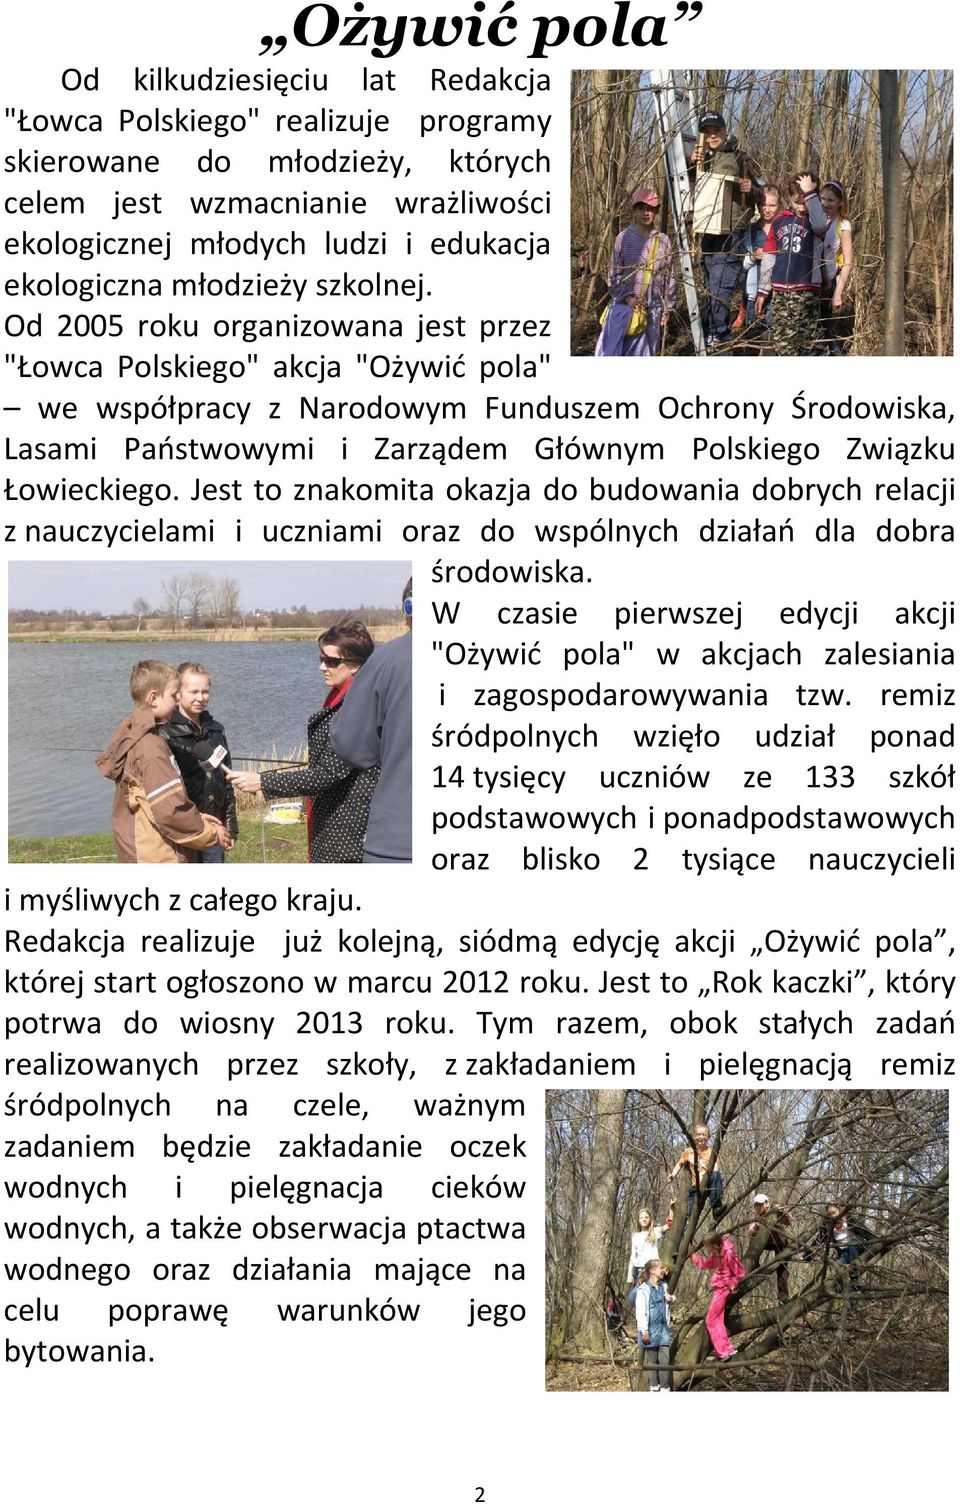 Od 2005 roku organizowana jest przez "Łowca Polskiego" akcja "Ożywić pola" we współpracy z Narodowym Funduszem Ochrony Środowiska, Lasami Państwowymi i Zarządem Głównym Polskiego Związku Łowieckiego.